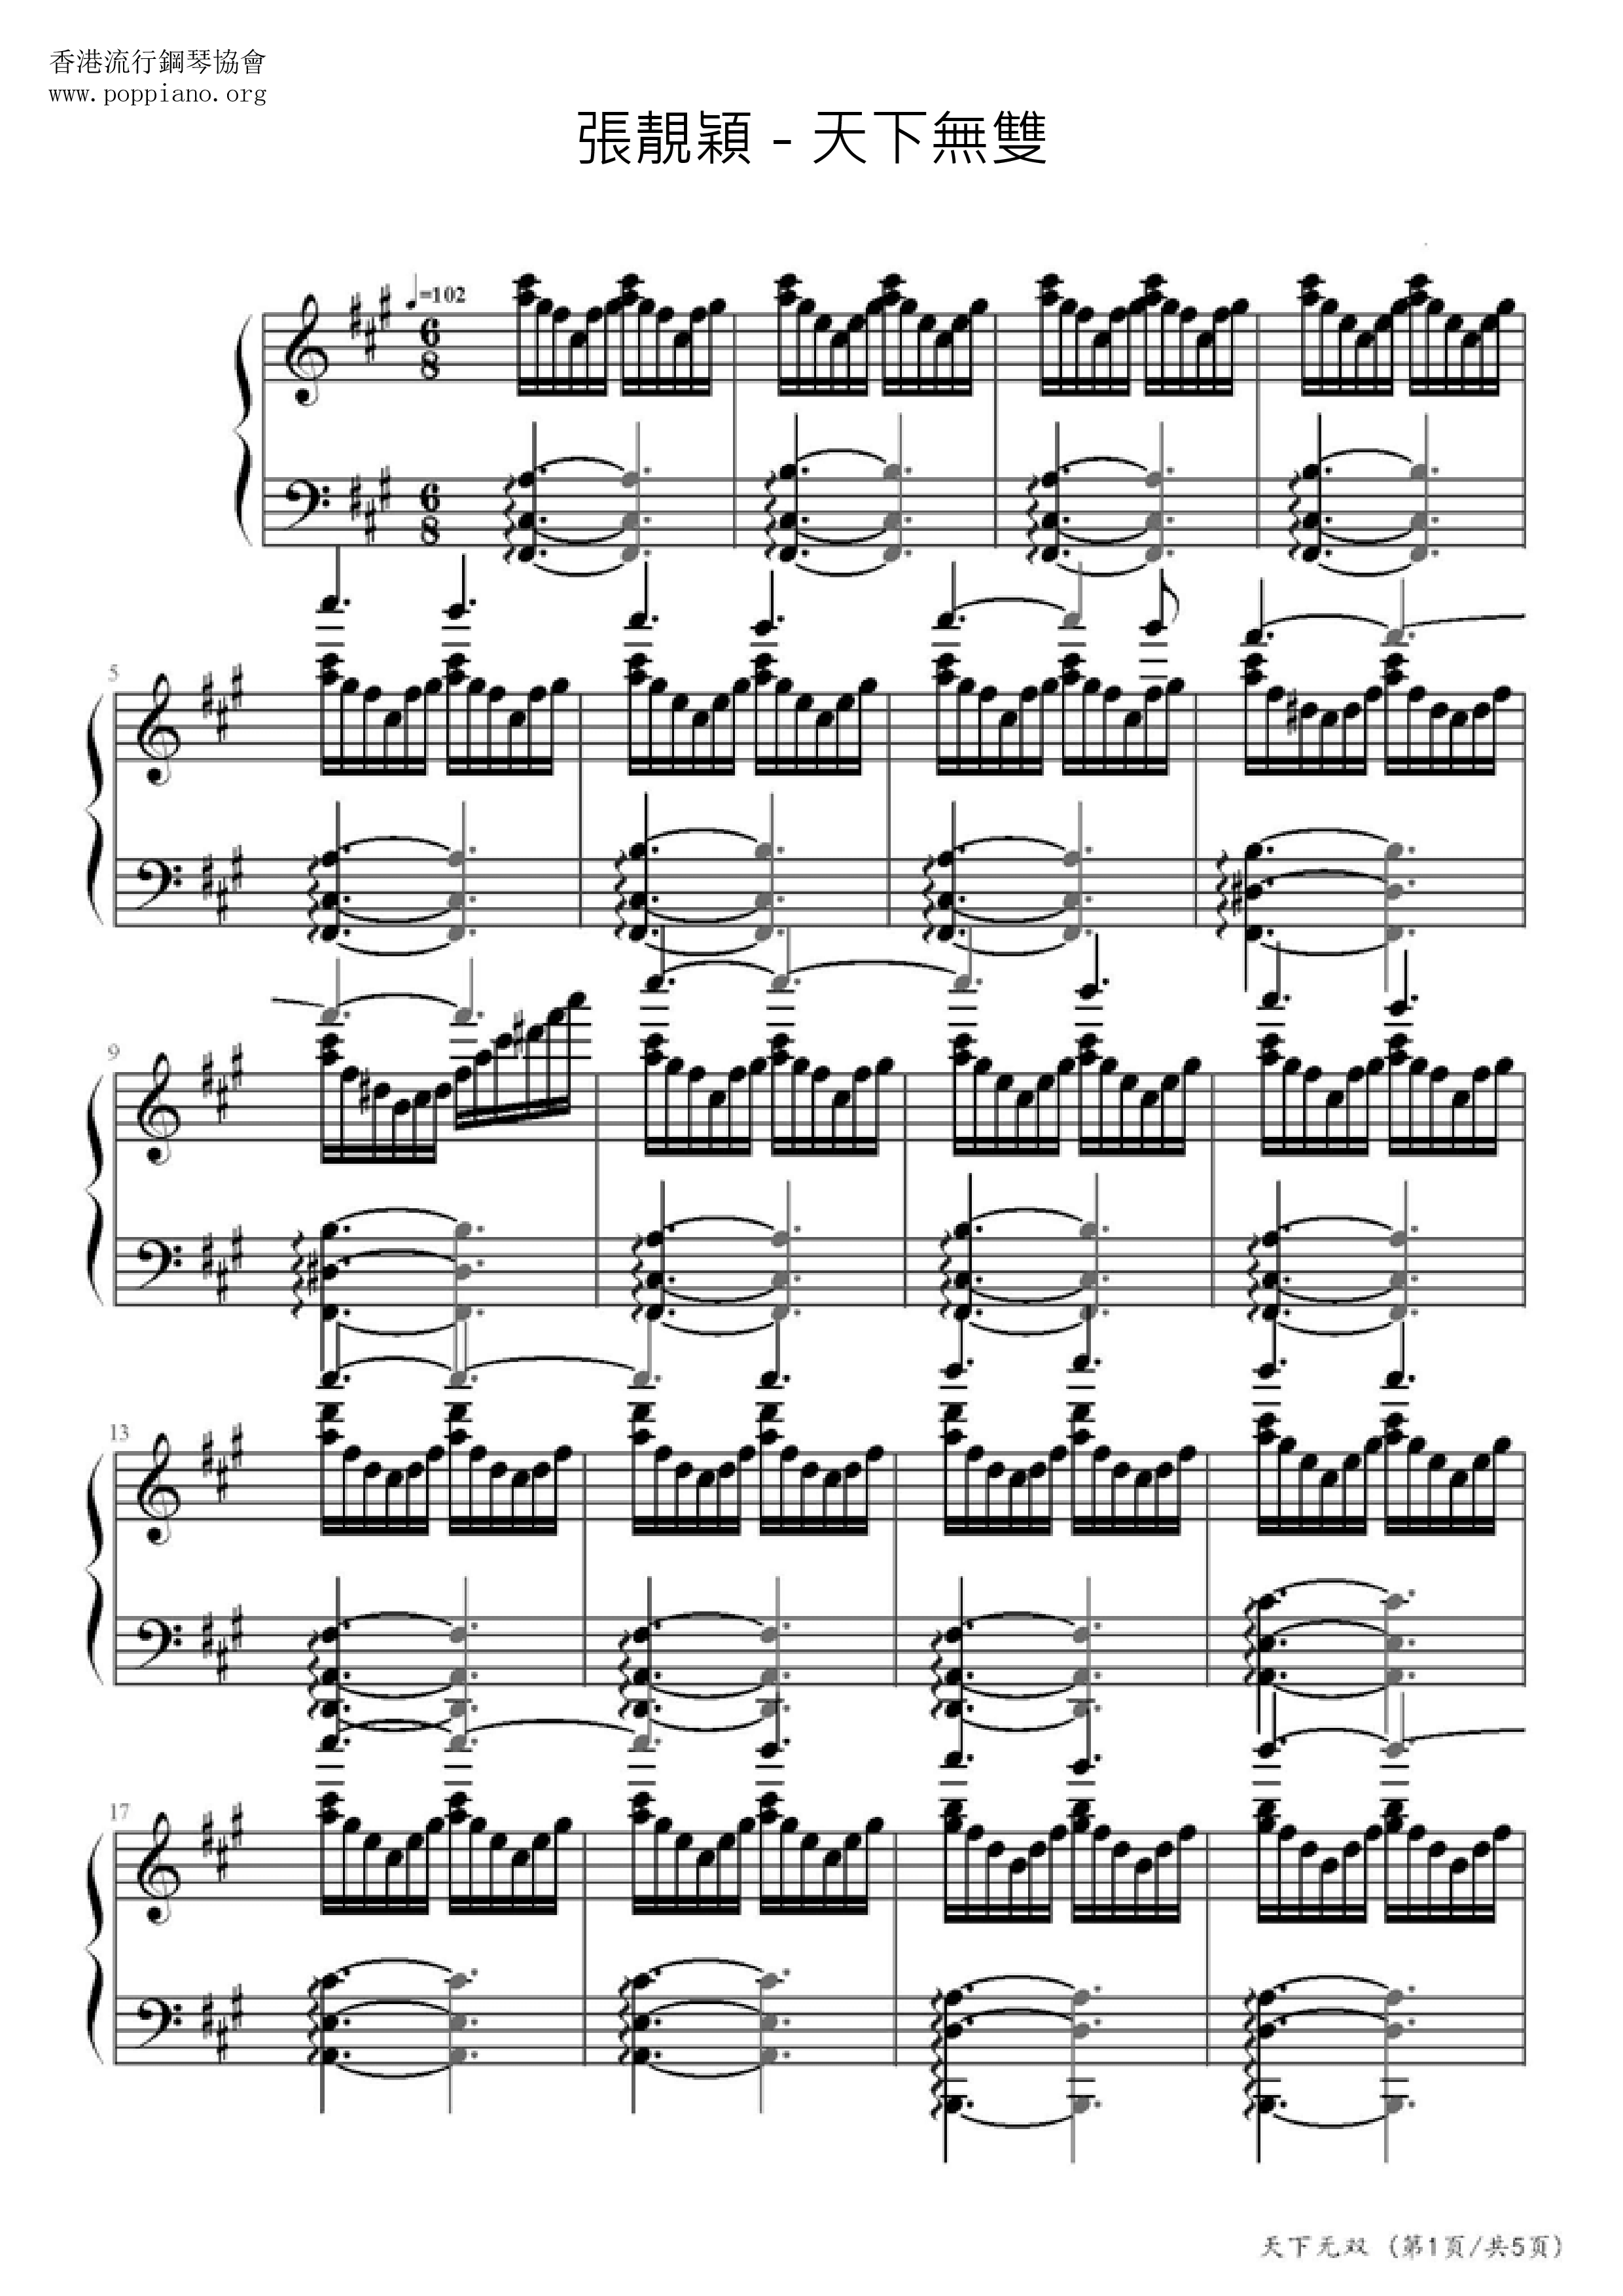 Tian Xia Wu Shuang Score